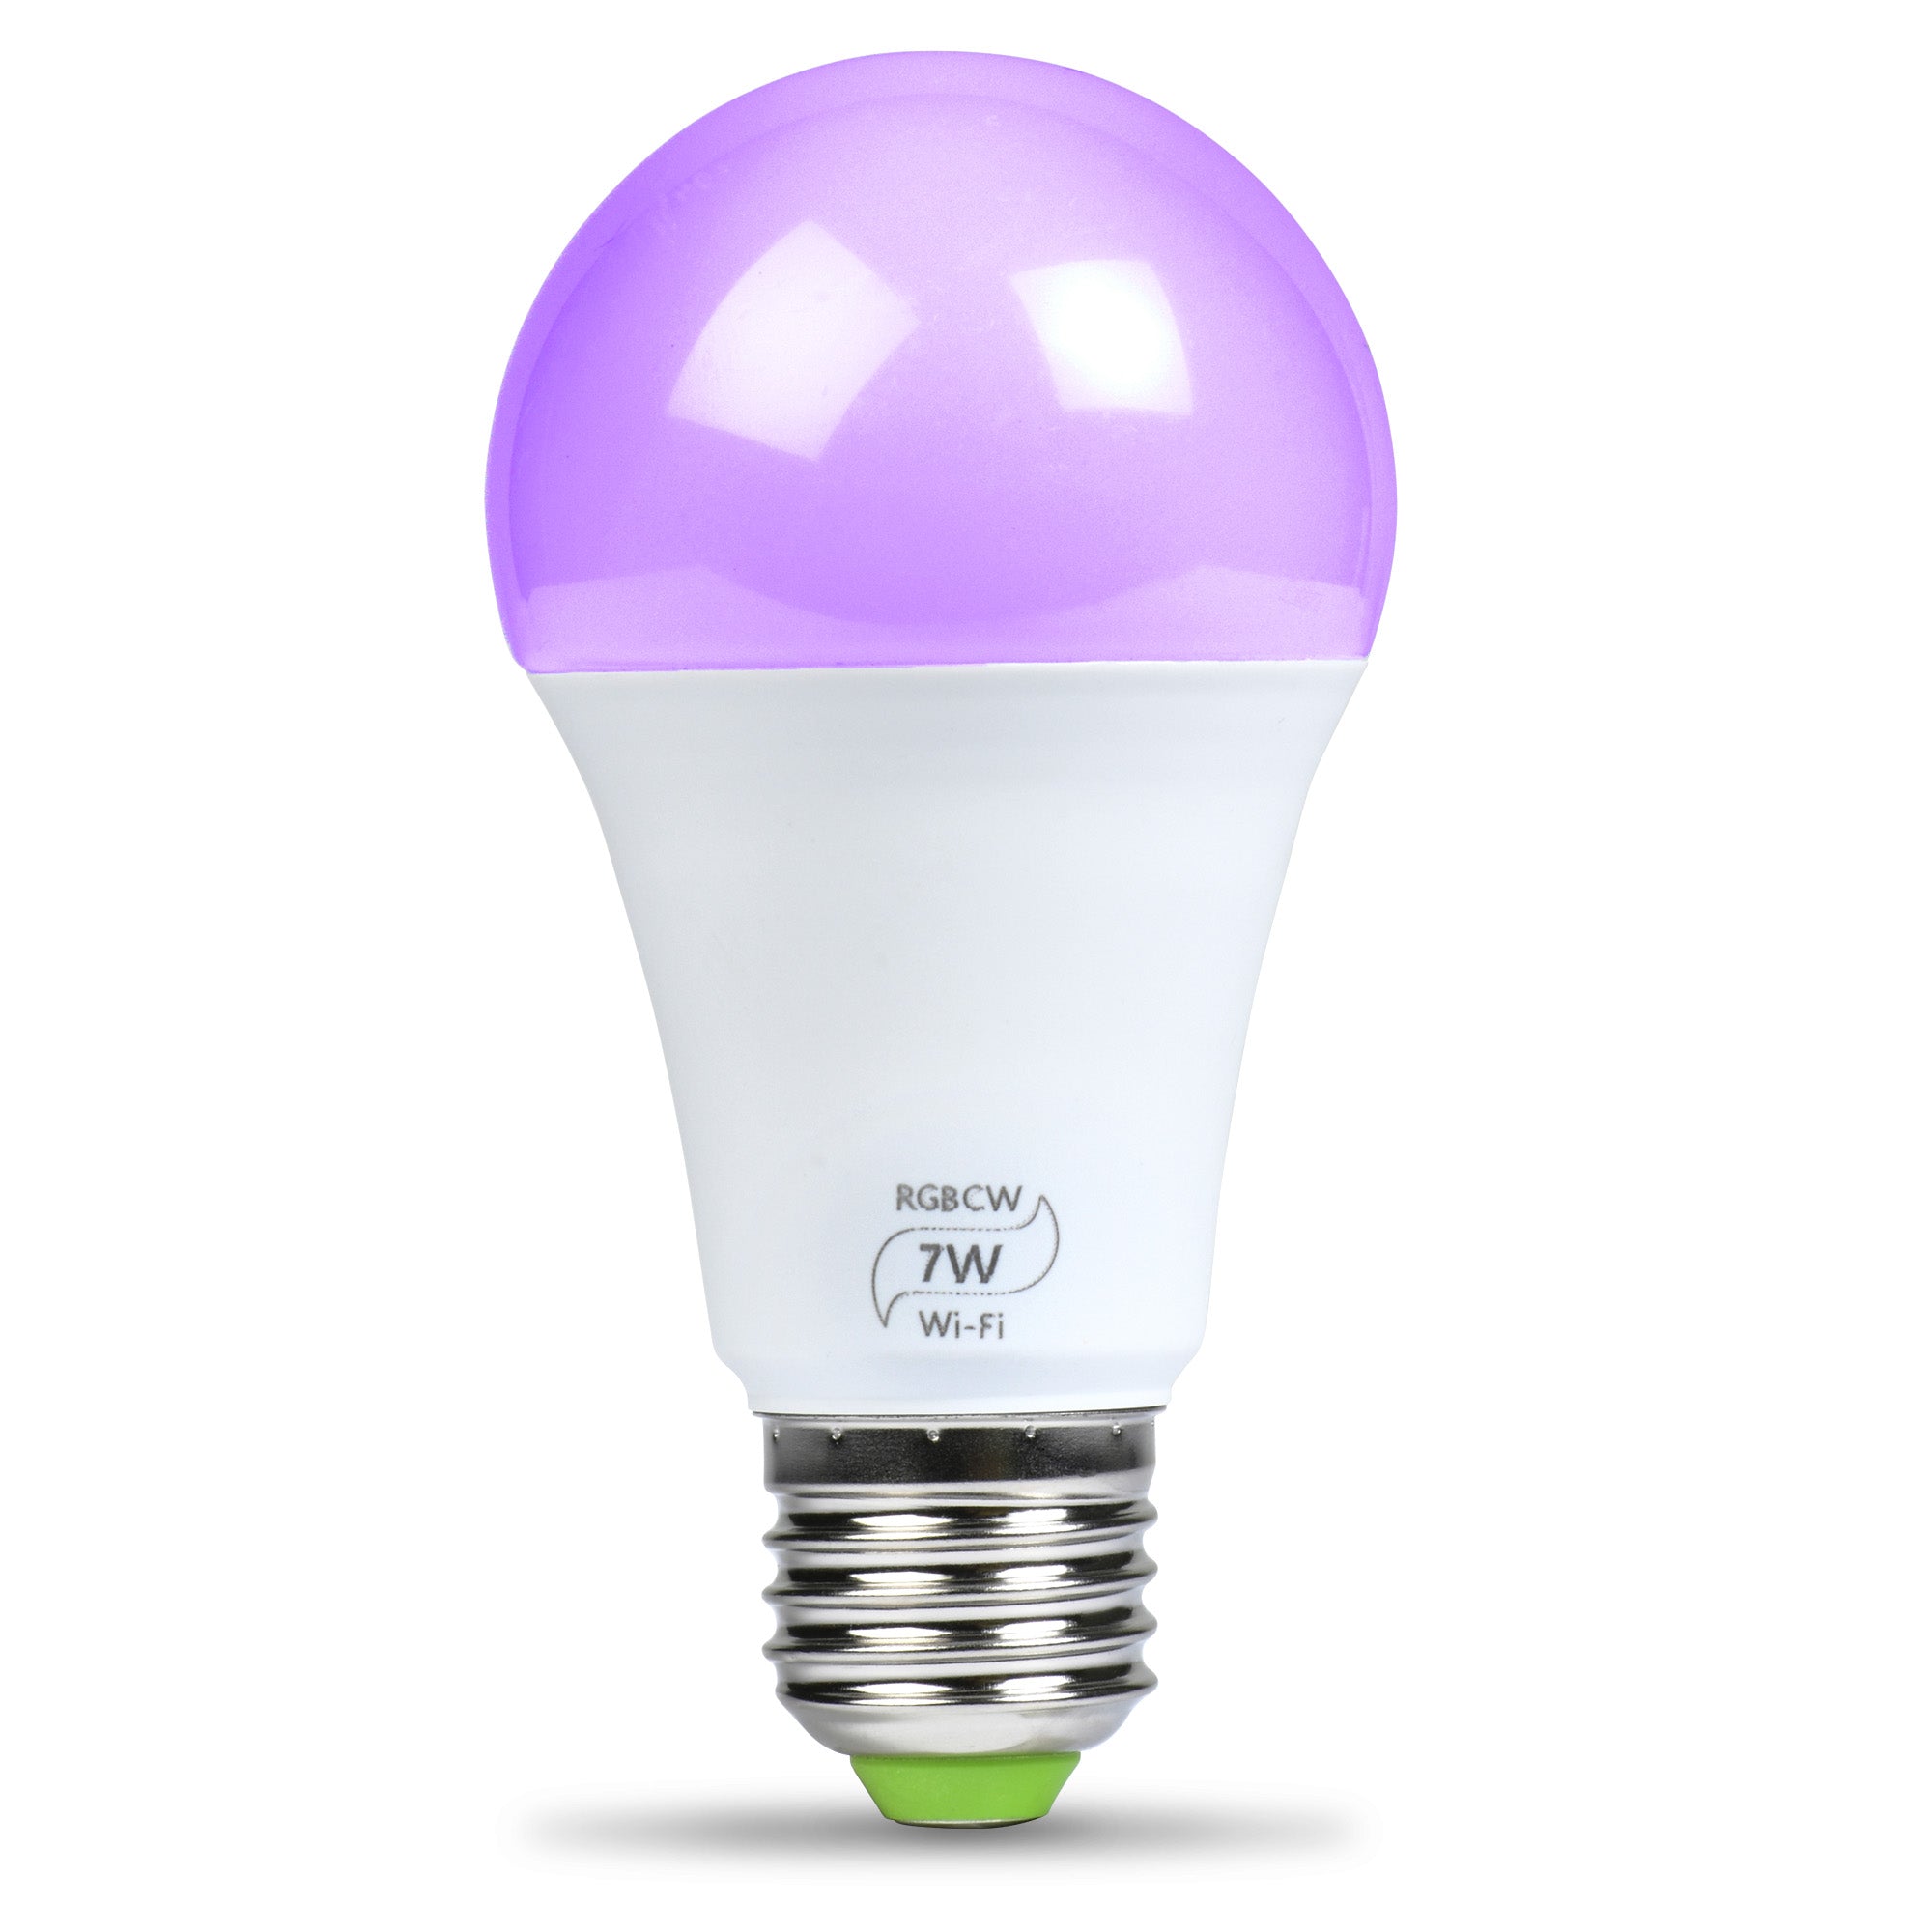 Flux WiFi Smart Light Bulb – Flux Smart Lighting